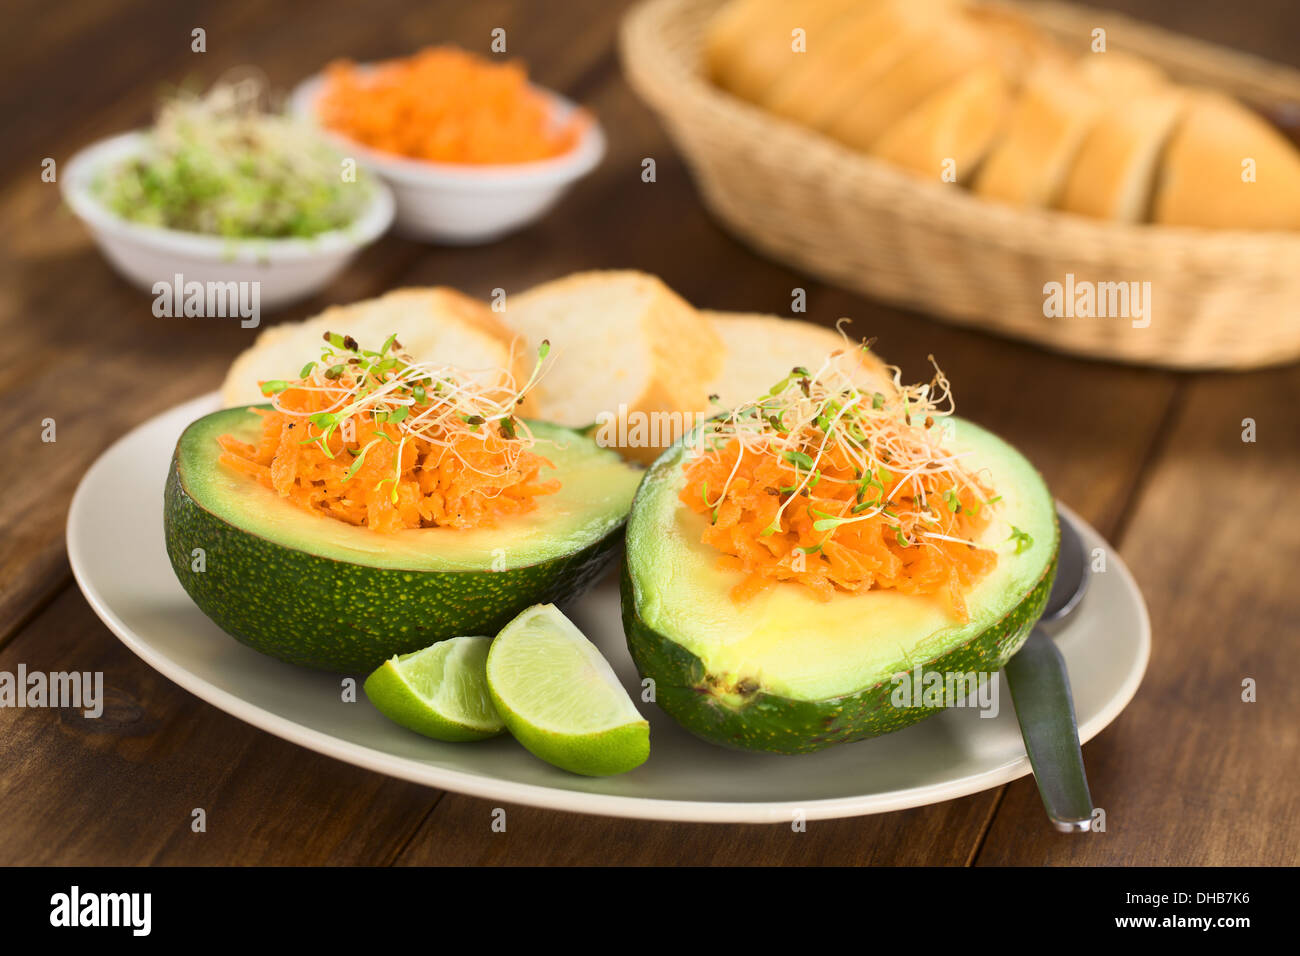 Metà di Avocado riempito con carote grattugiate e cosparso di germogli alfalfa servita su piastra con spicchi di lime e baguette fette Foto Stock